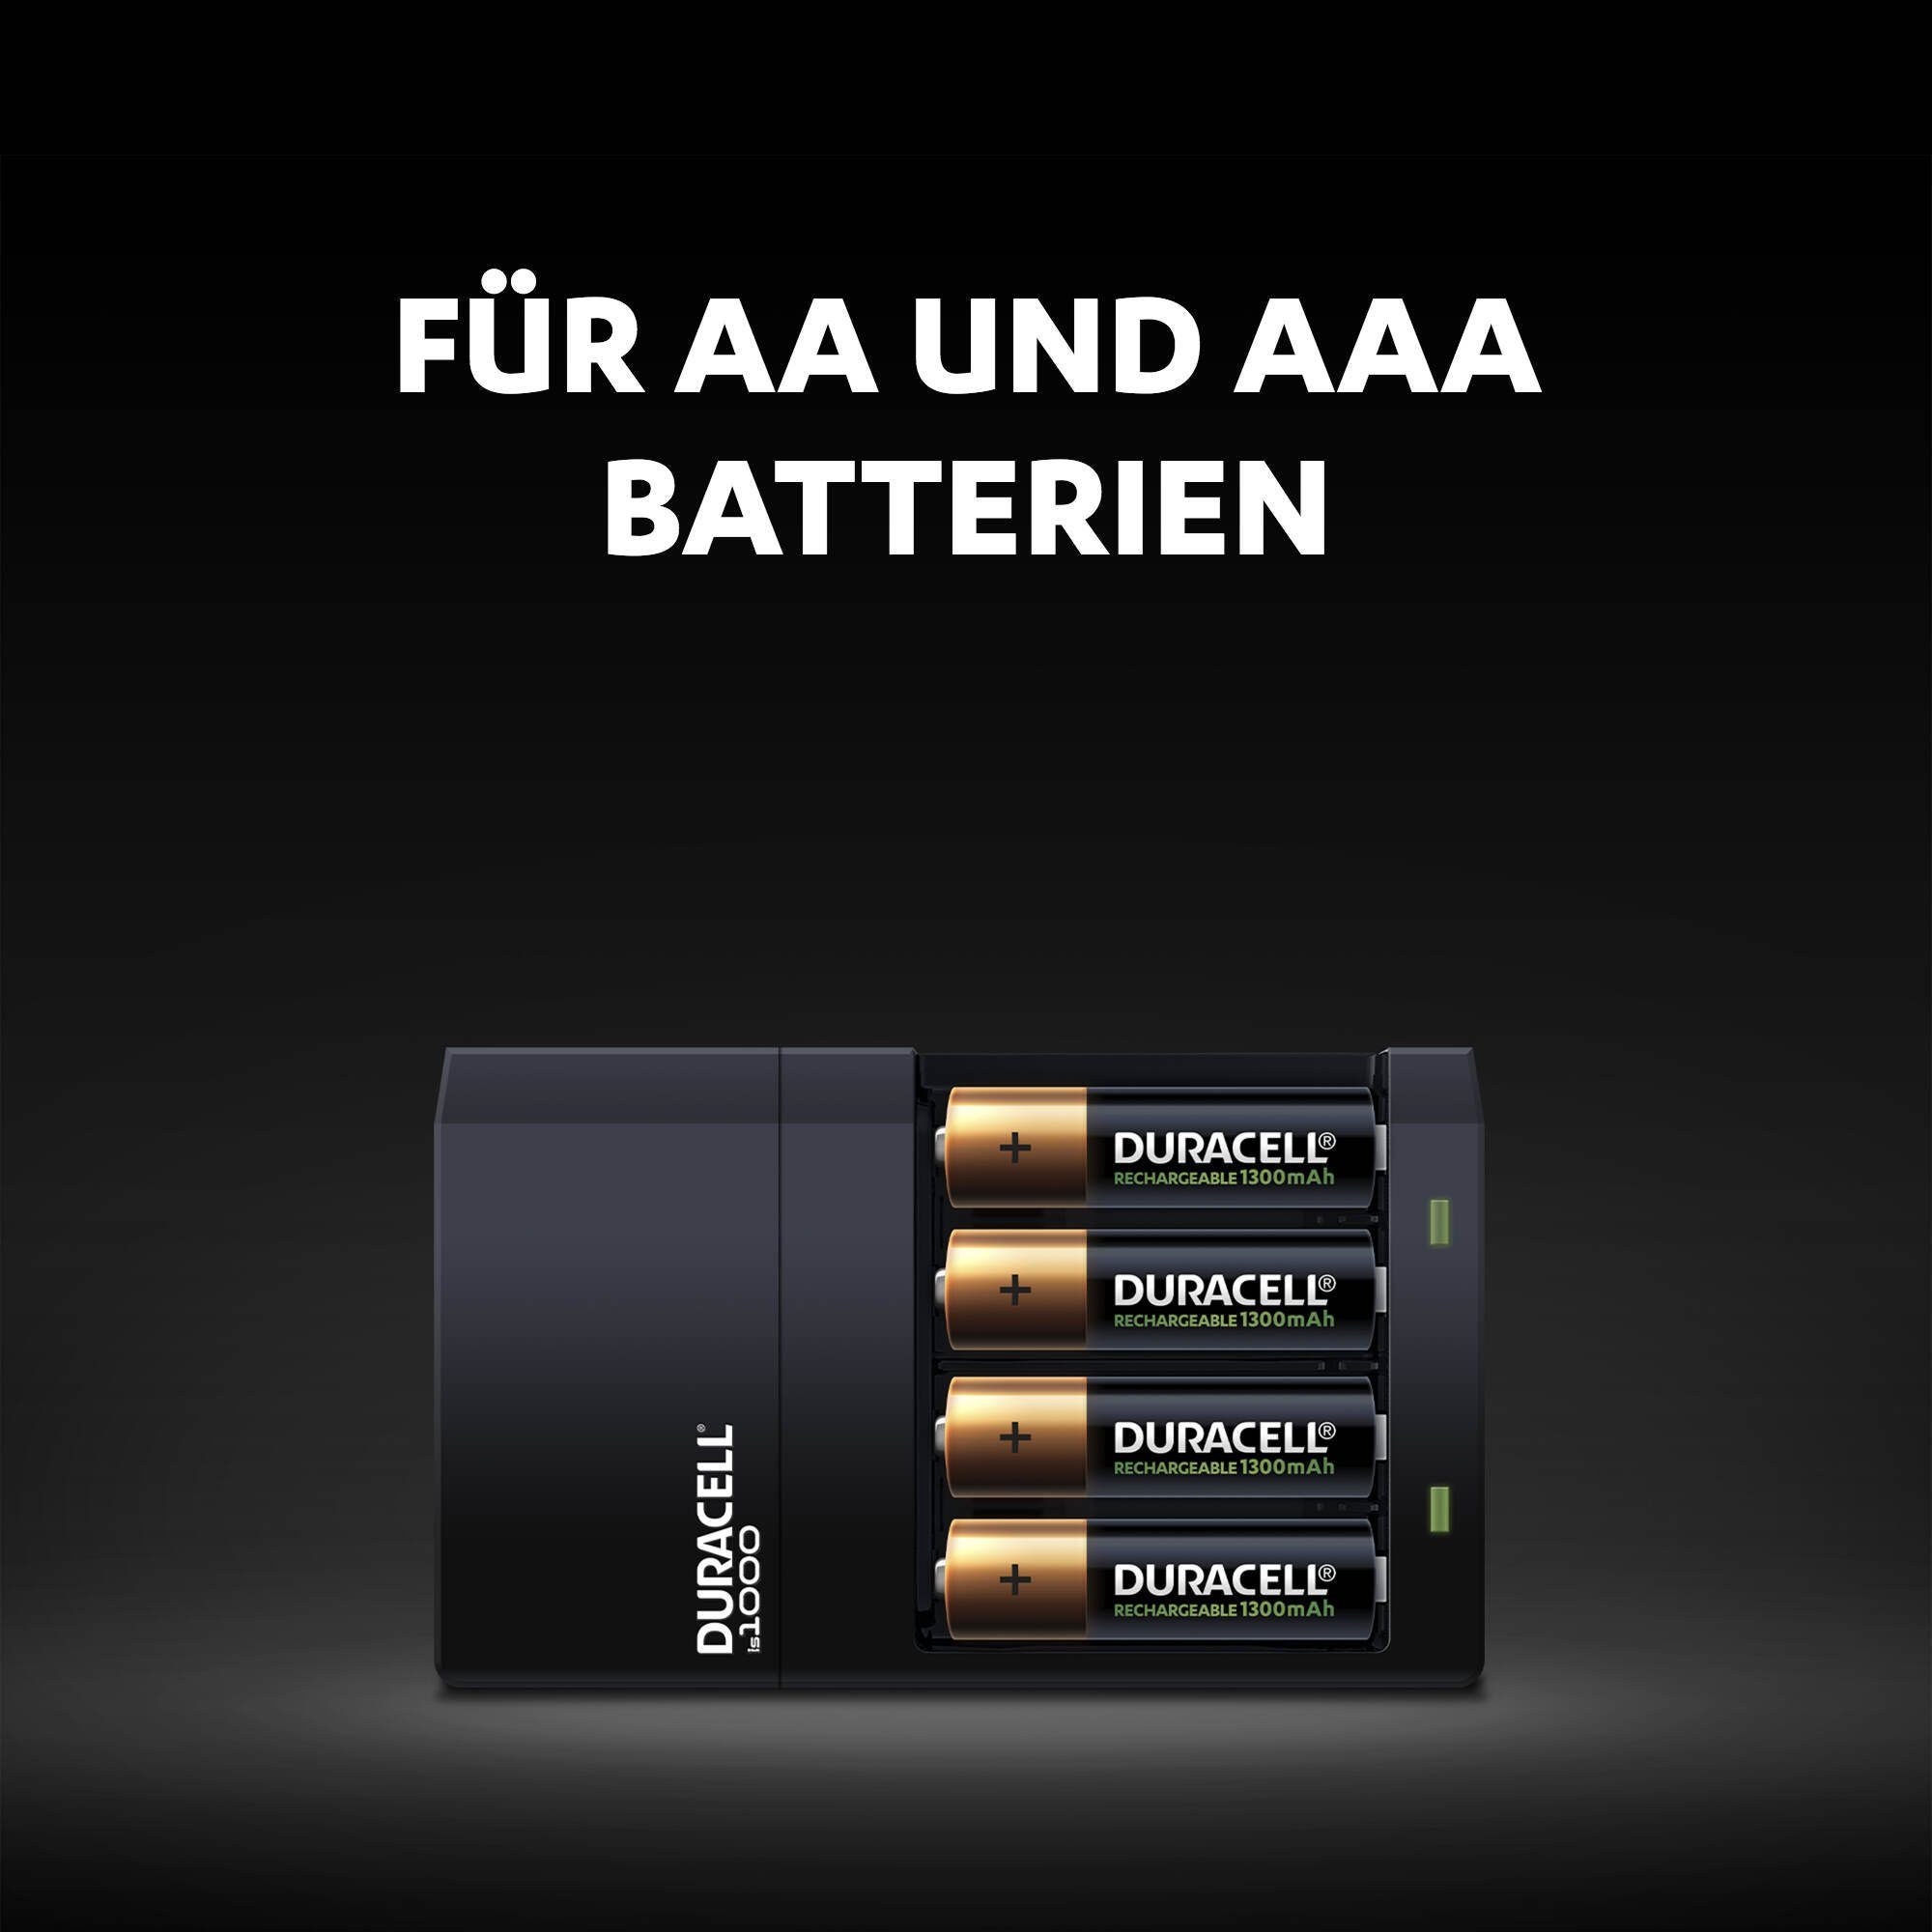 Hi-Speed Batterie-Ladegerät Duracell Charger